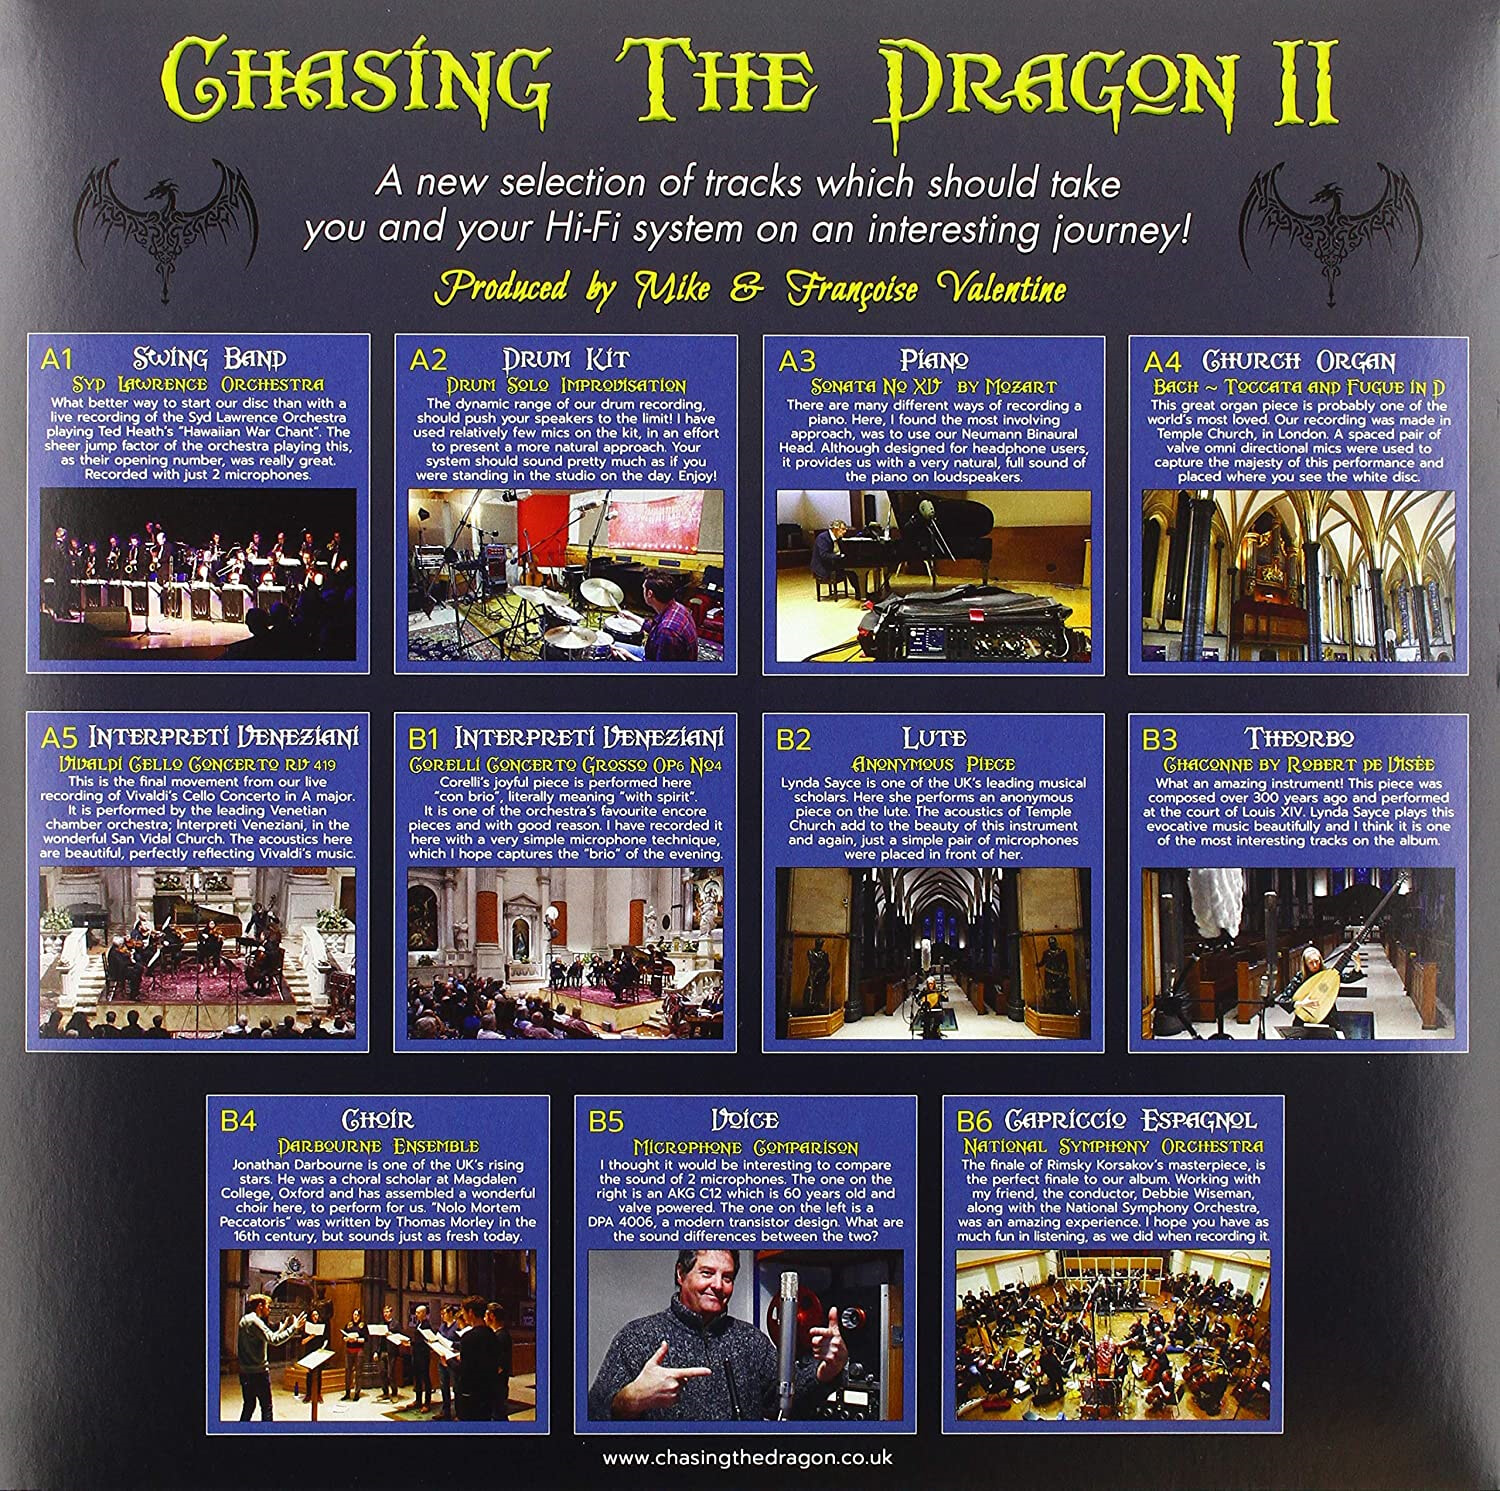 체이싱 더 드래곤 레이블 오디오파일용 데모 및 테스트 2집 (Chasing The Dragon II) [LP] 